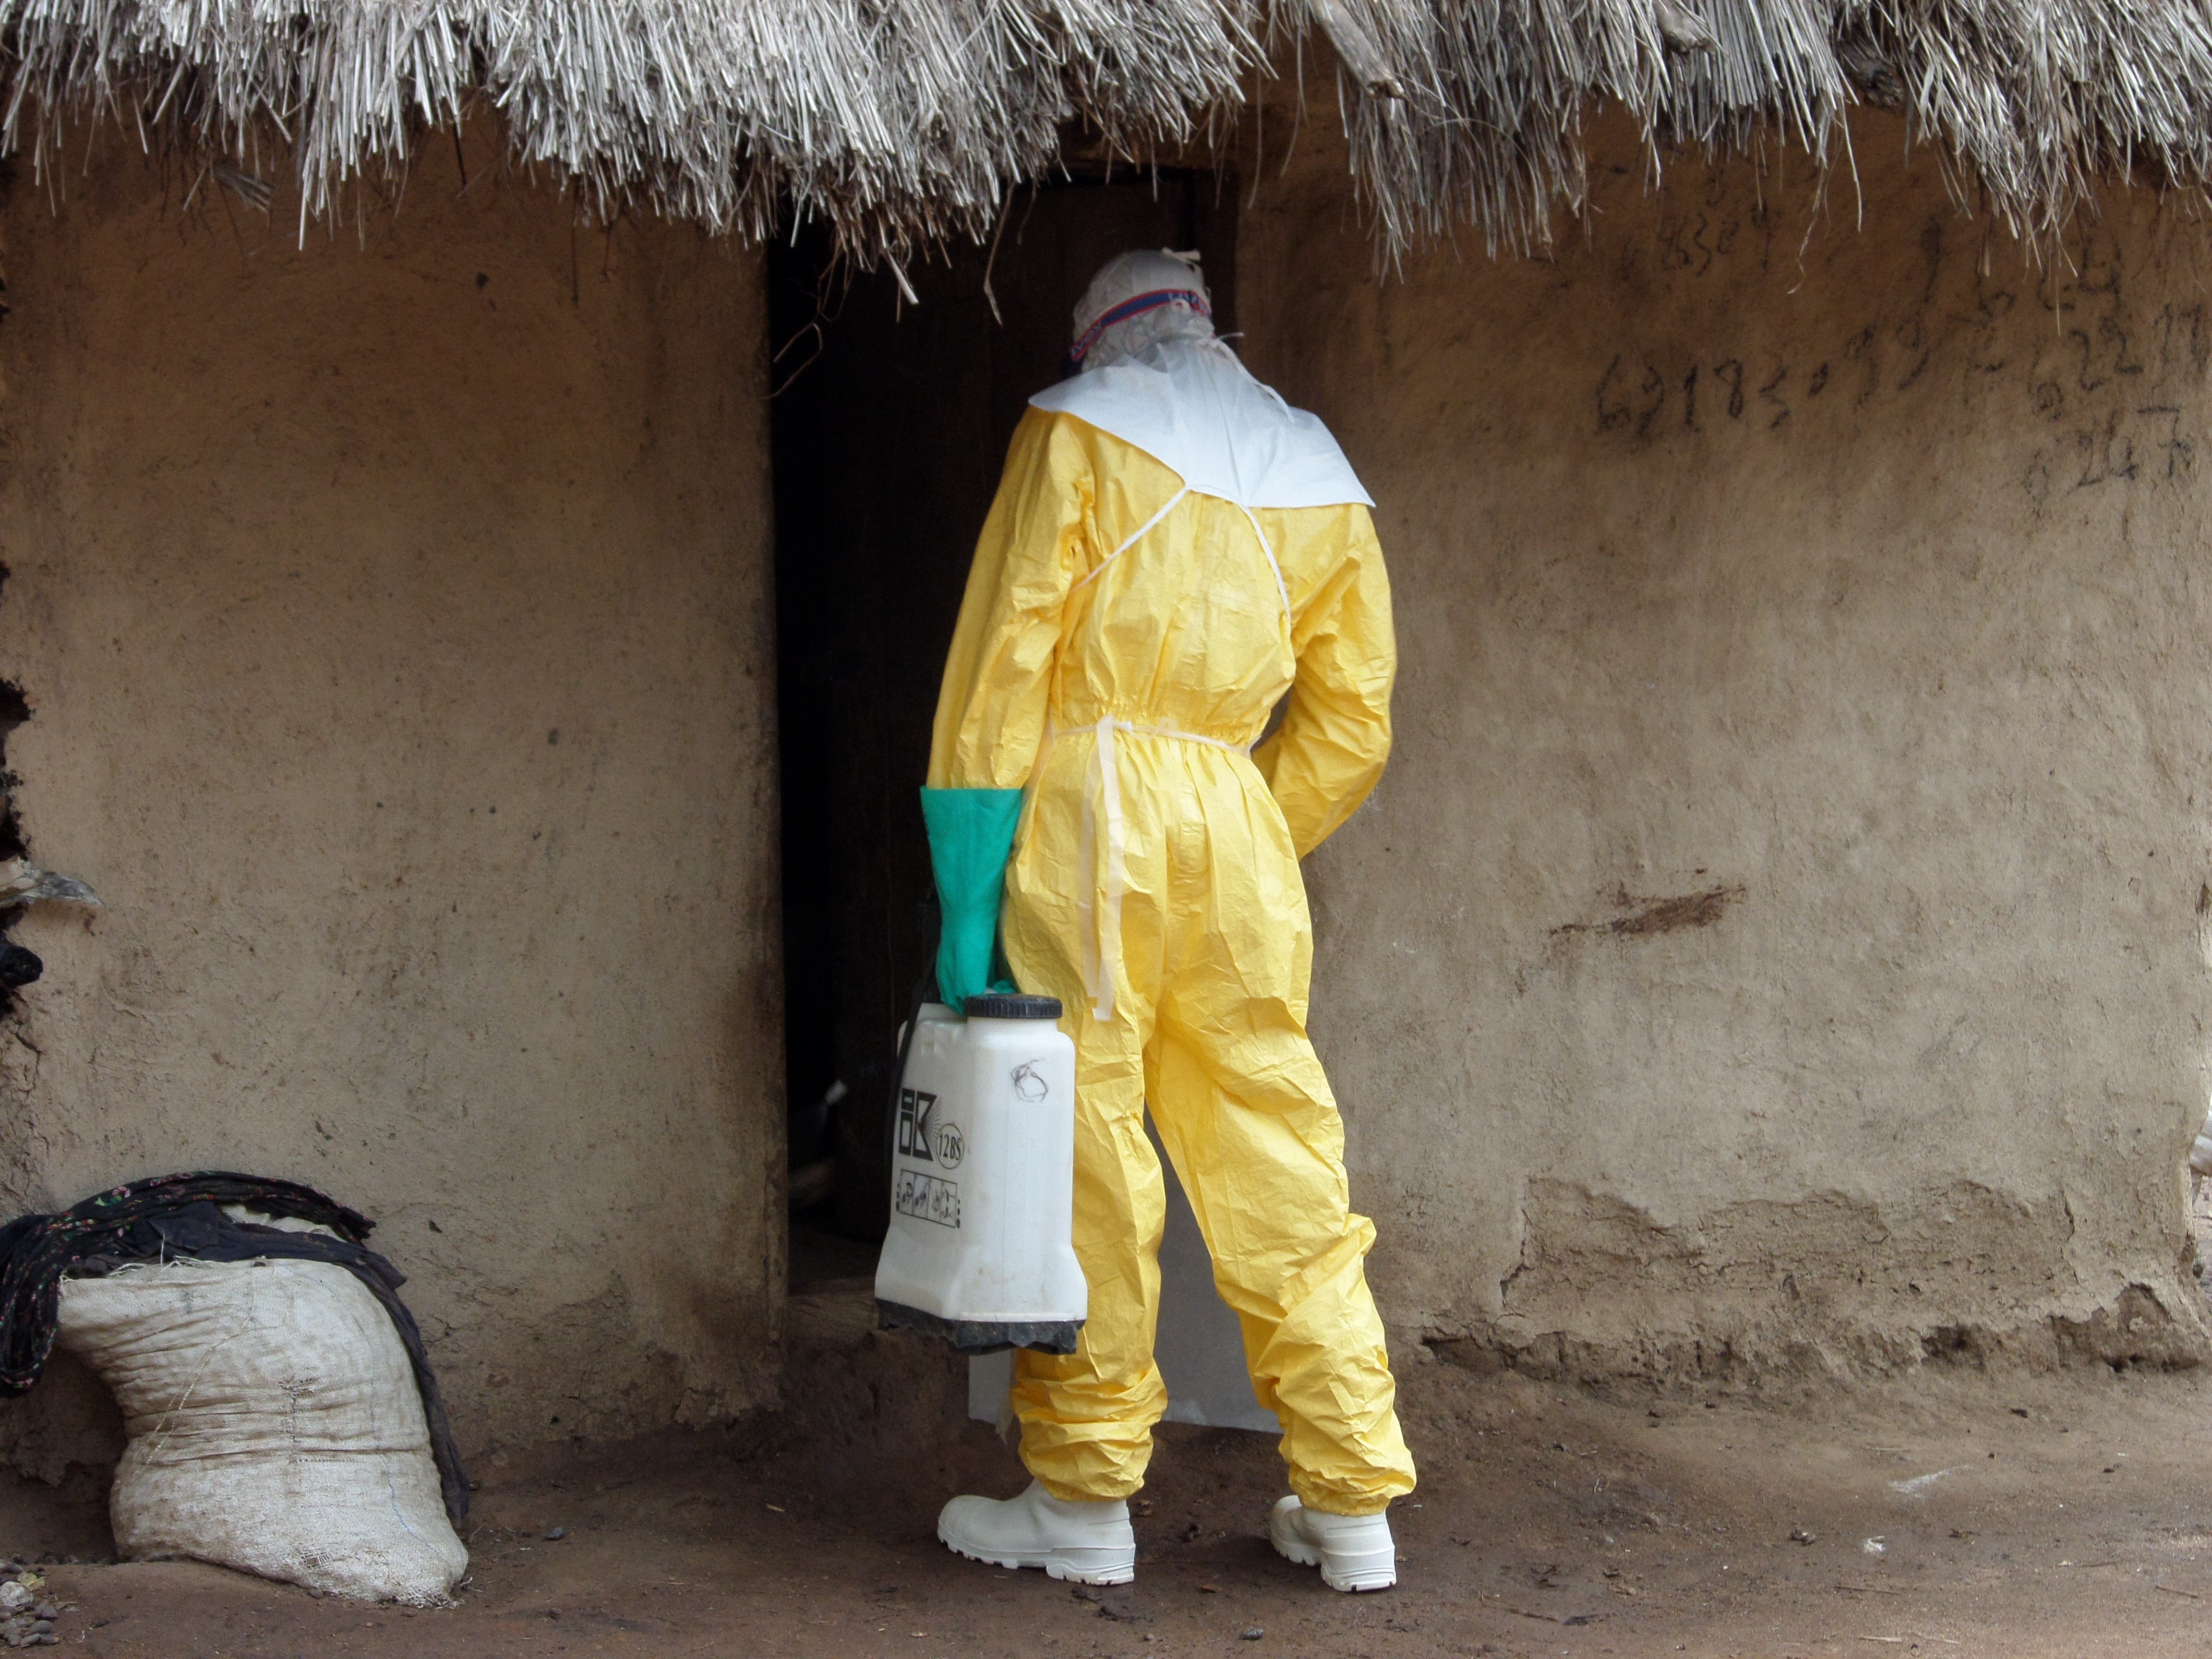 Habitantes culpam os agentes de saúde pelo ebola (Foto: EC/ECHO/Jean-Louis Mosser/flickr/creative commons)